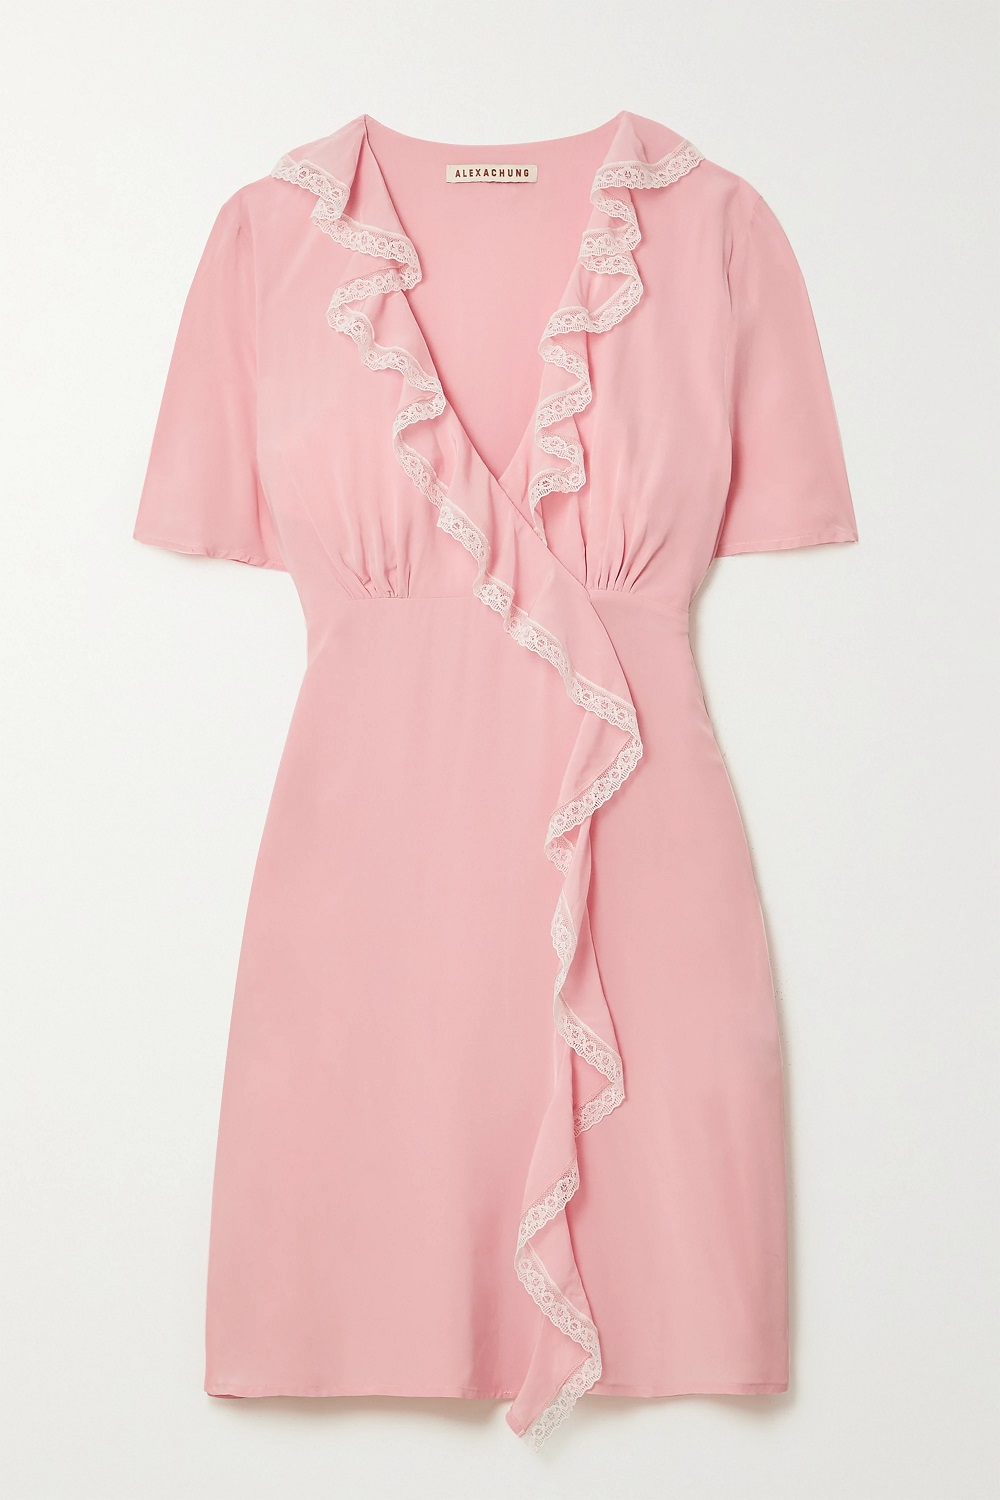 ALEXACHUNG haljina ružičasta boja proljeće 2021.